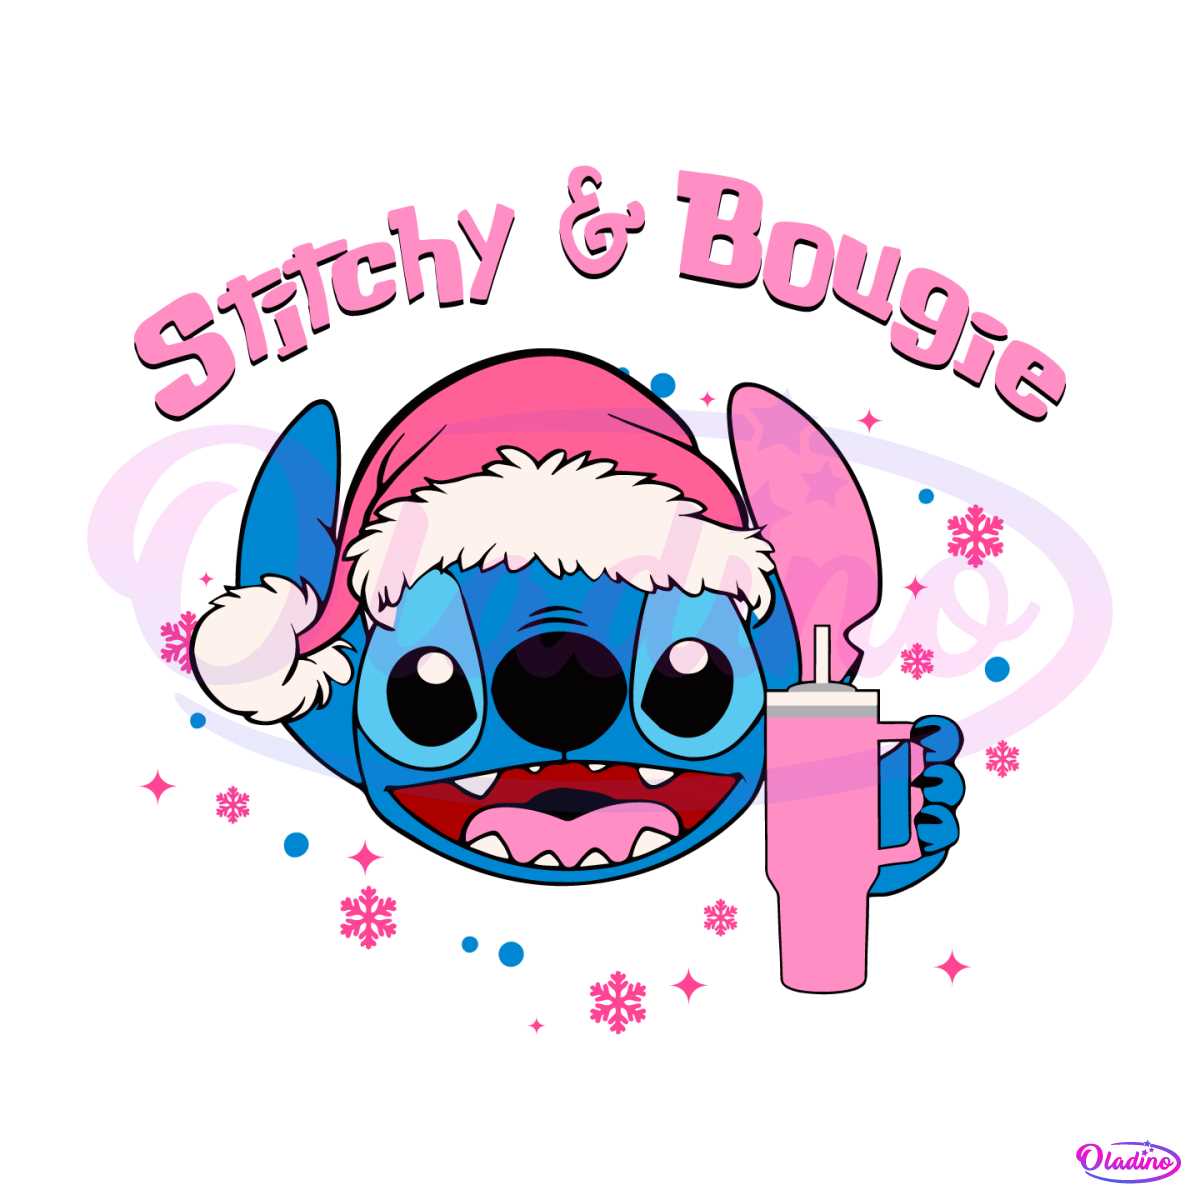 Bougie stitch